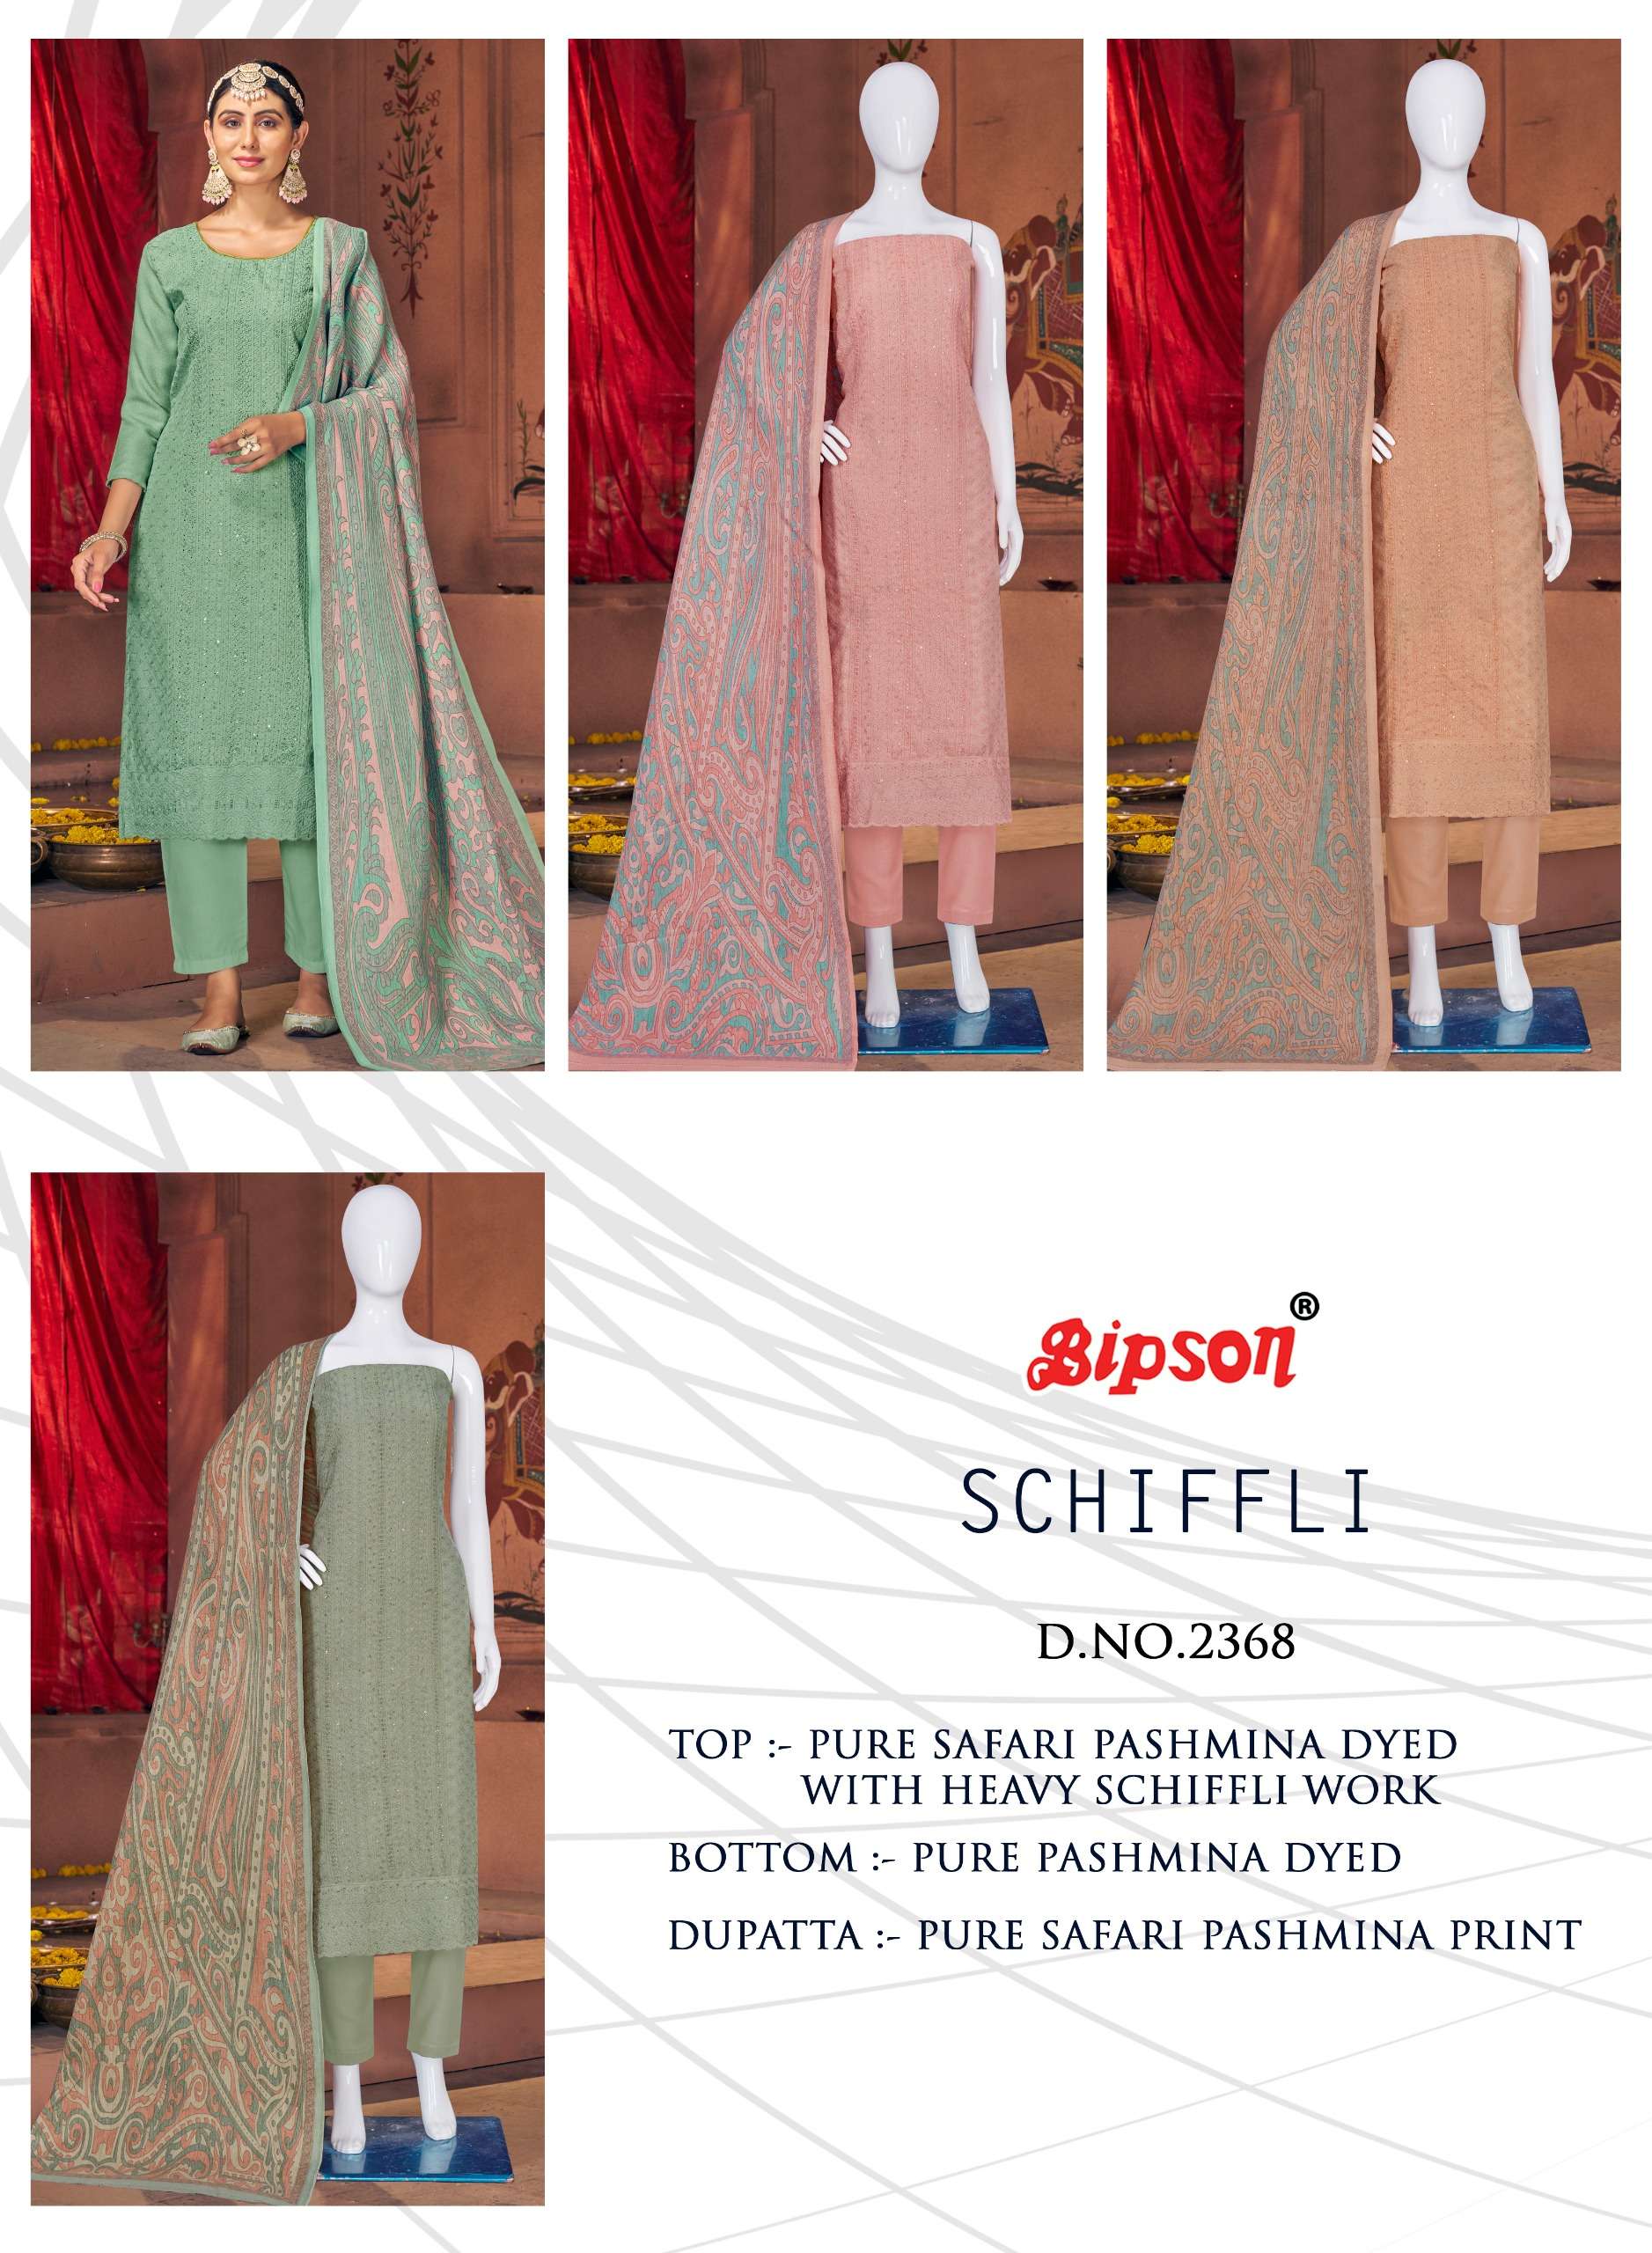 bipson schiffli 2369 colours latest designer party wear suit wholesaler surat gujarat